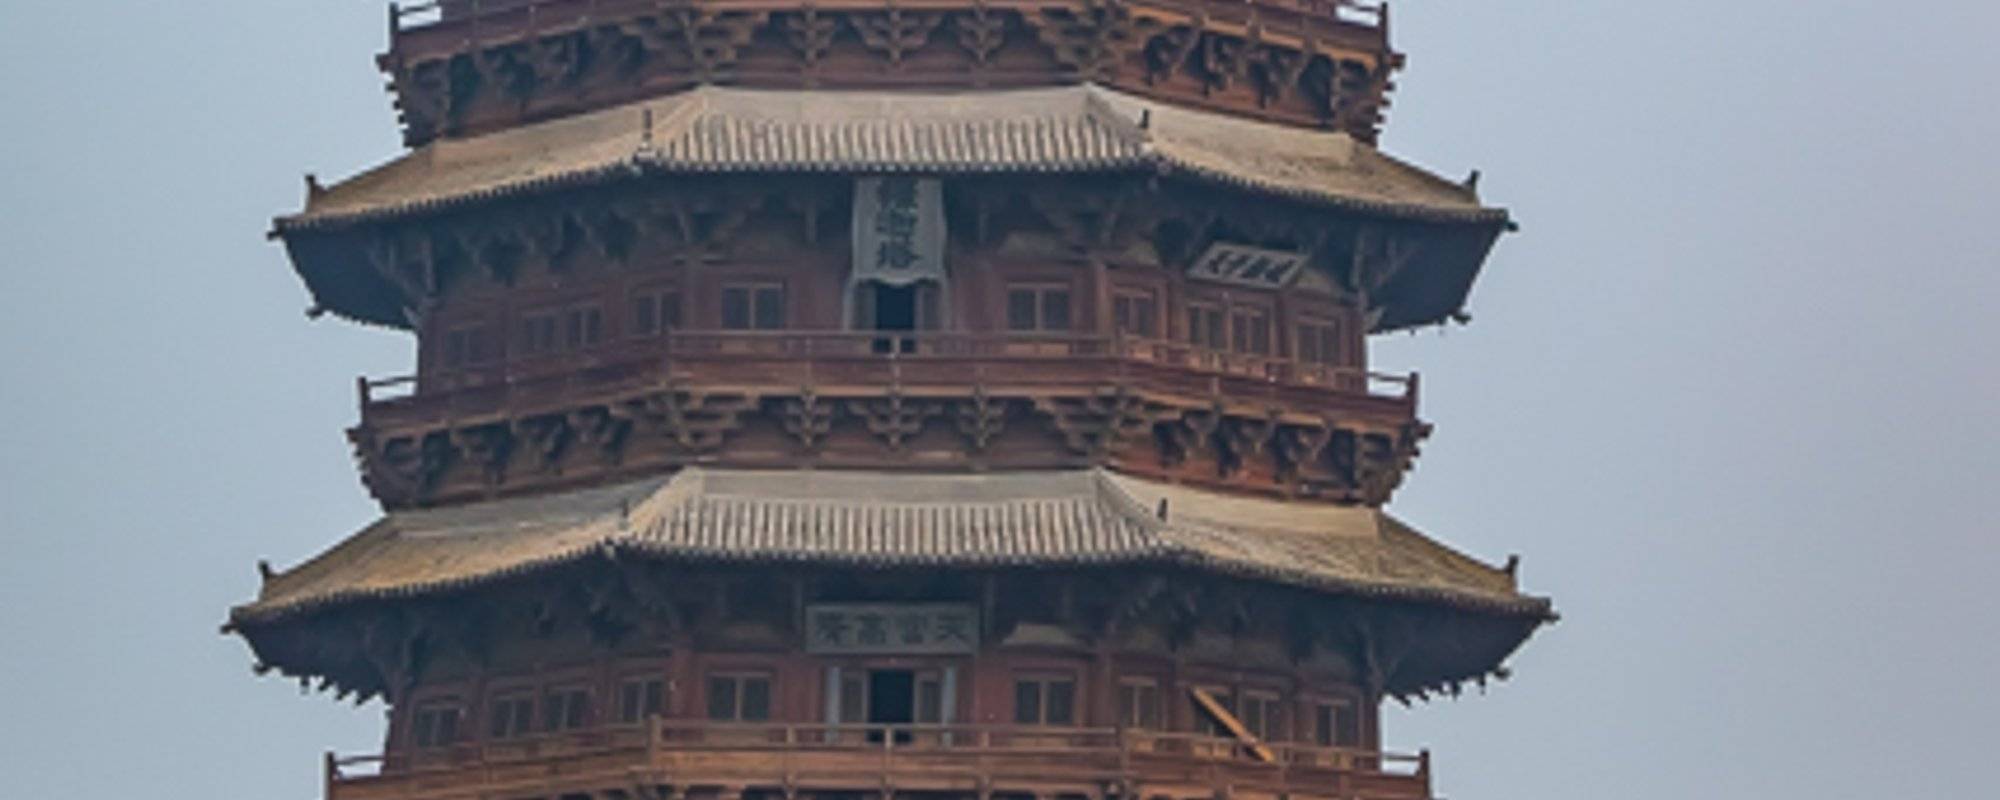 Yingxian Wooden Pagoda of Datong